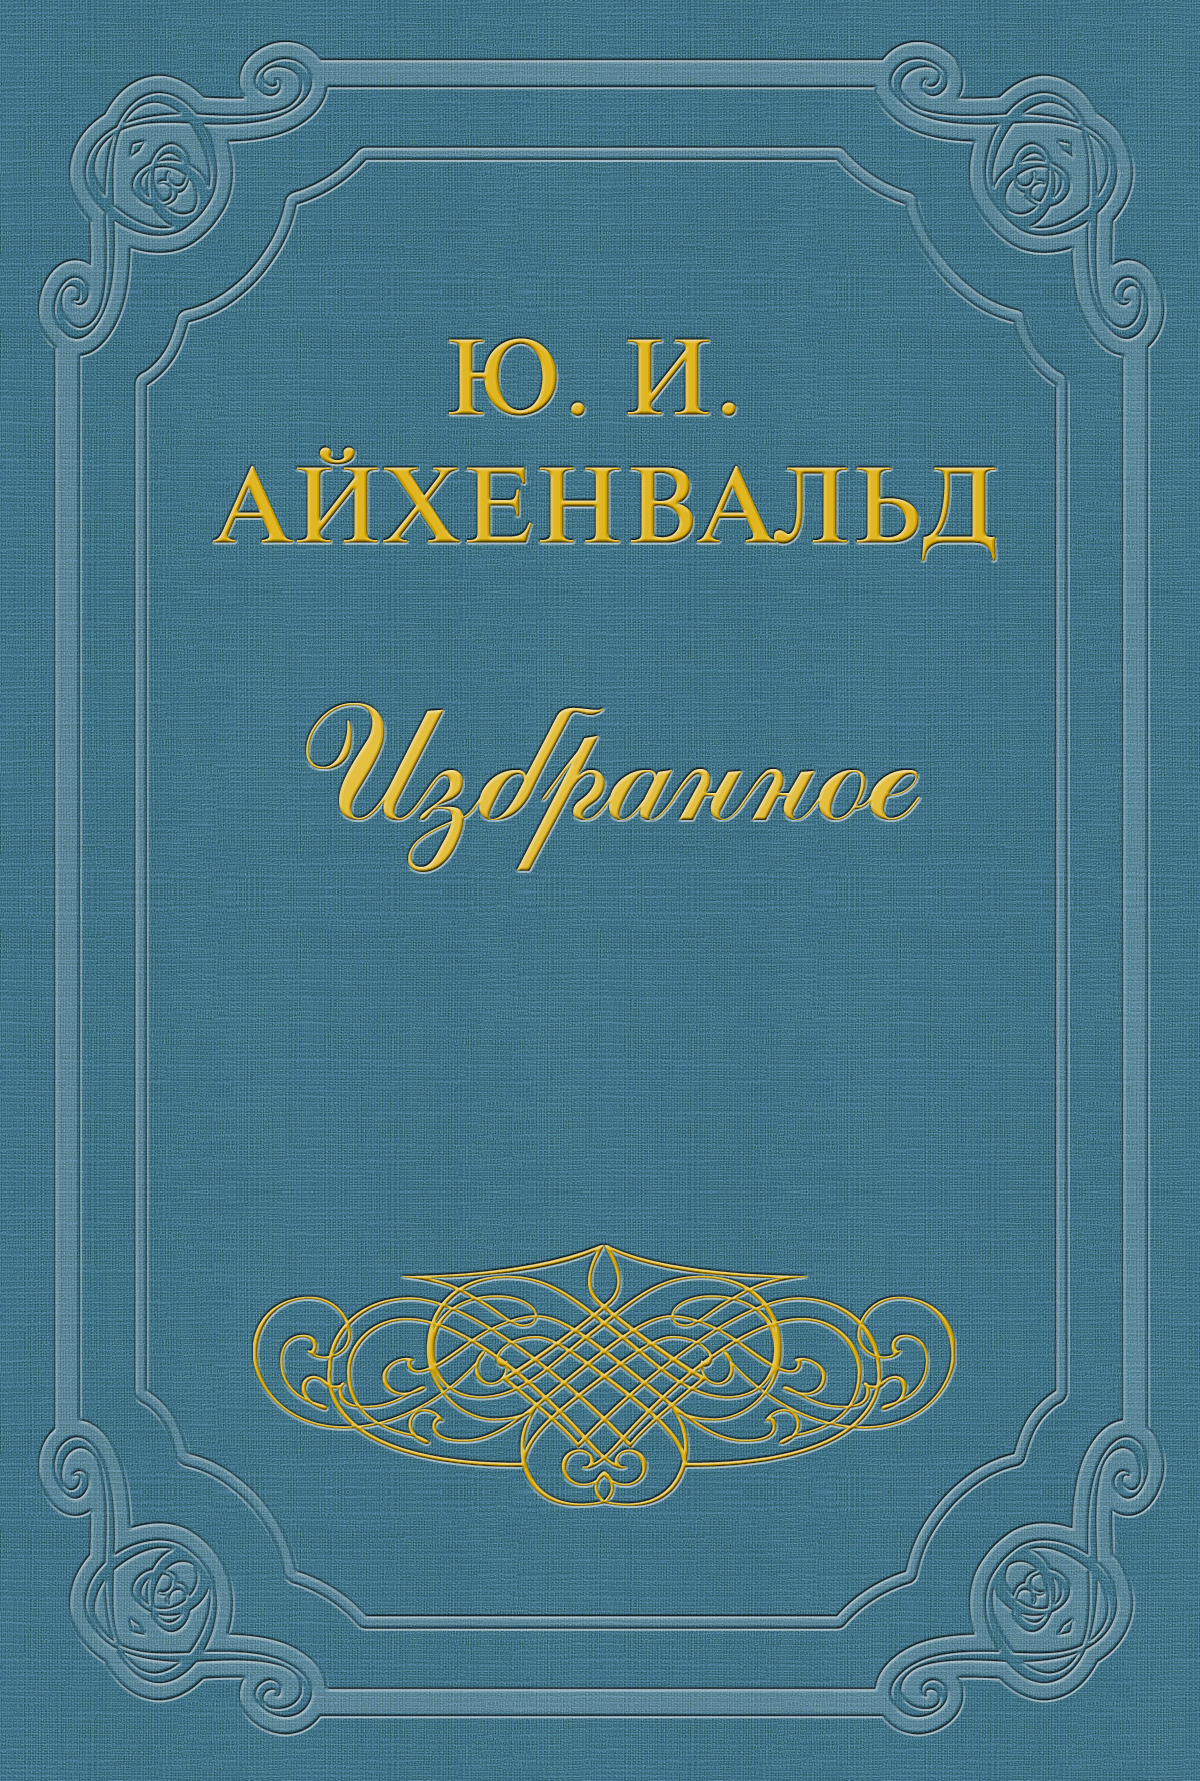 Книга Чехов из серии , созданная Юлий Айхенвальд, может относится к жанру Критика. Стоимость книги Чехов  с идентификатором 2593985 составляет 19.99 руб.